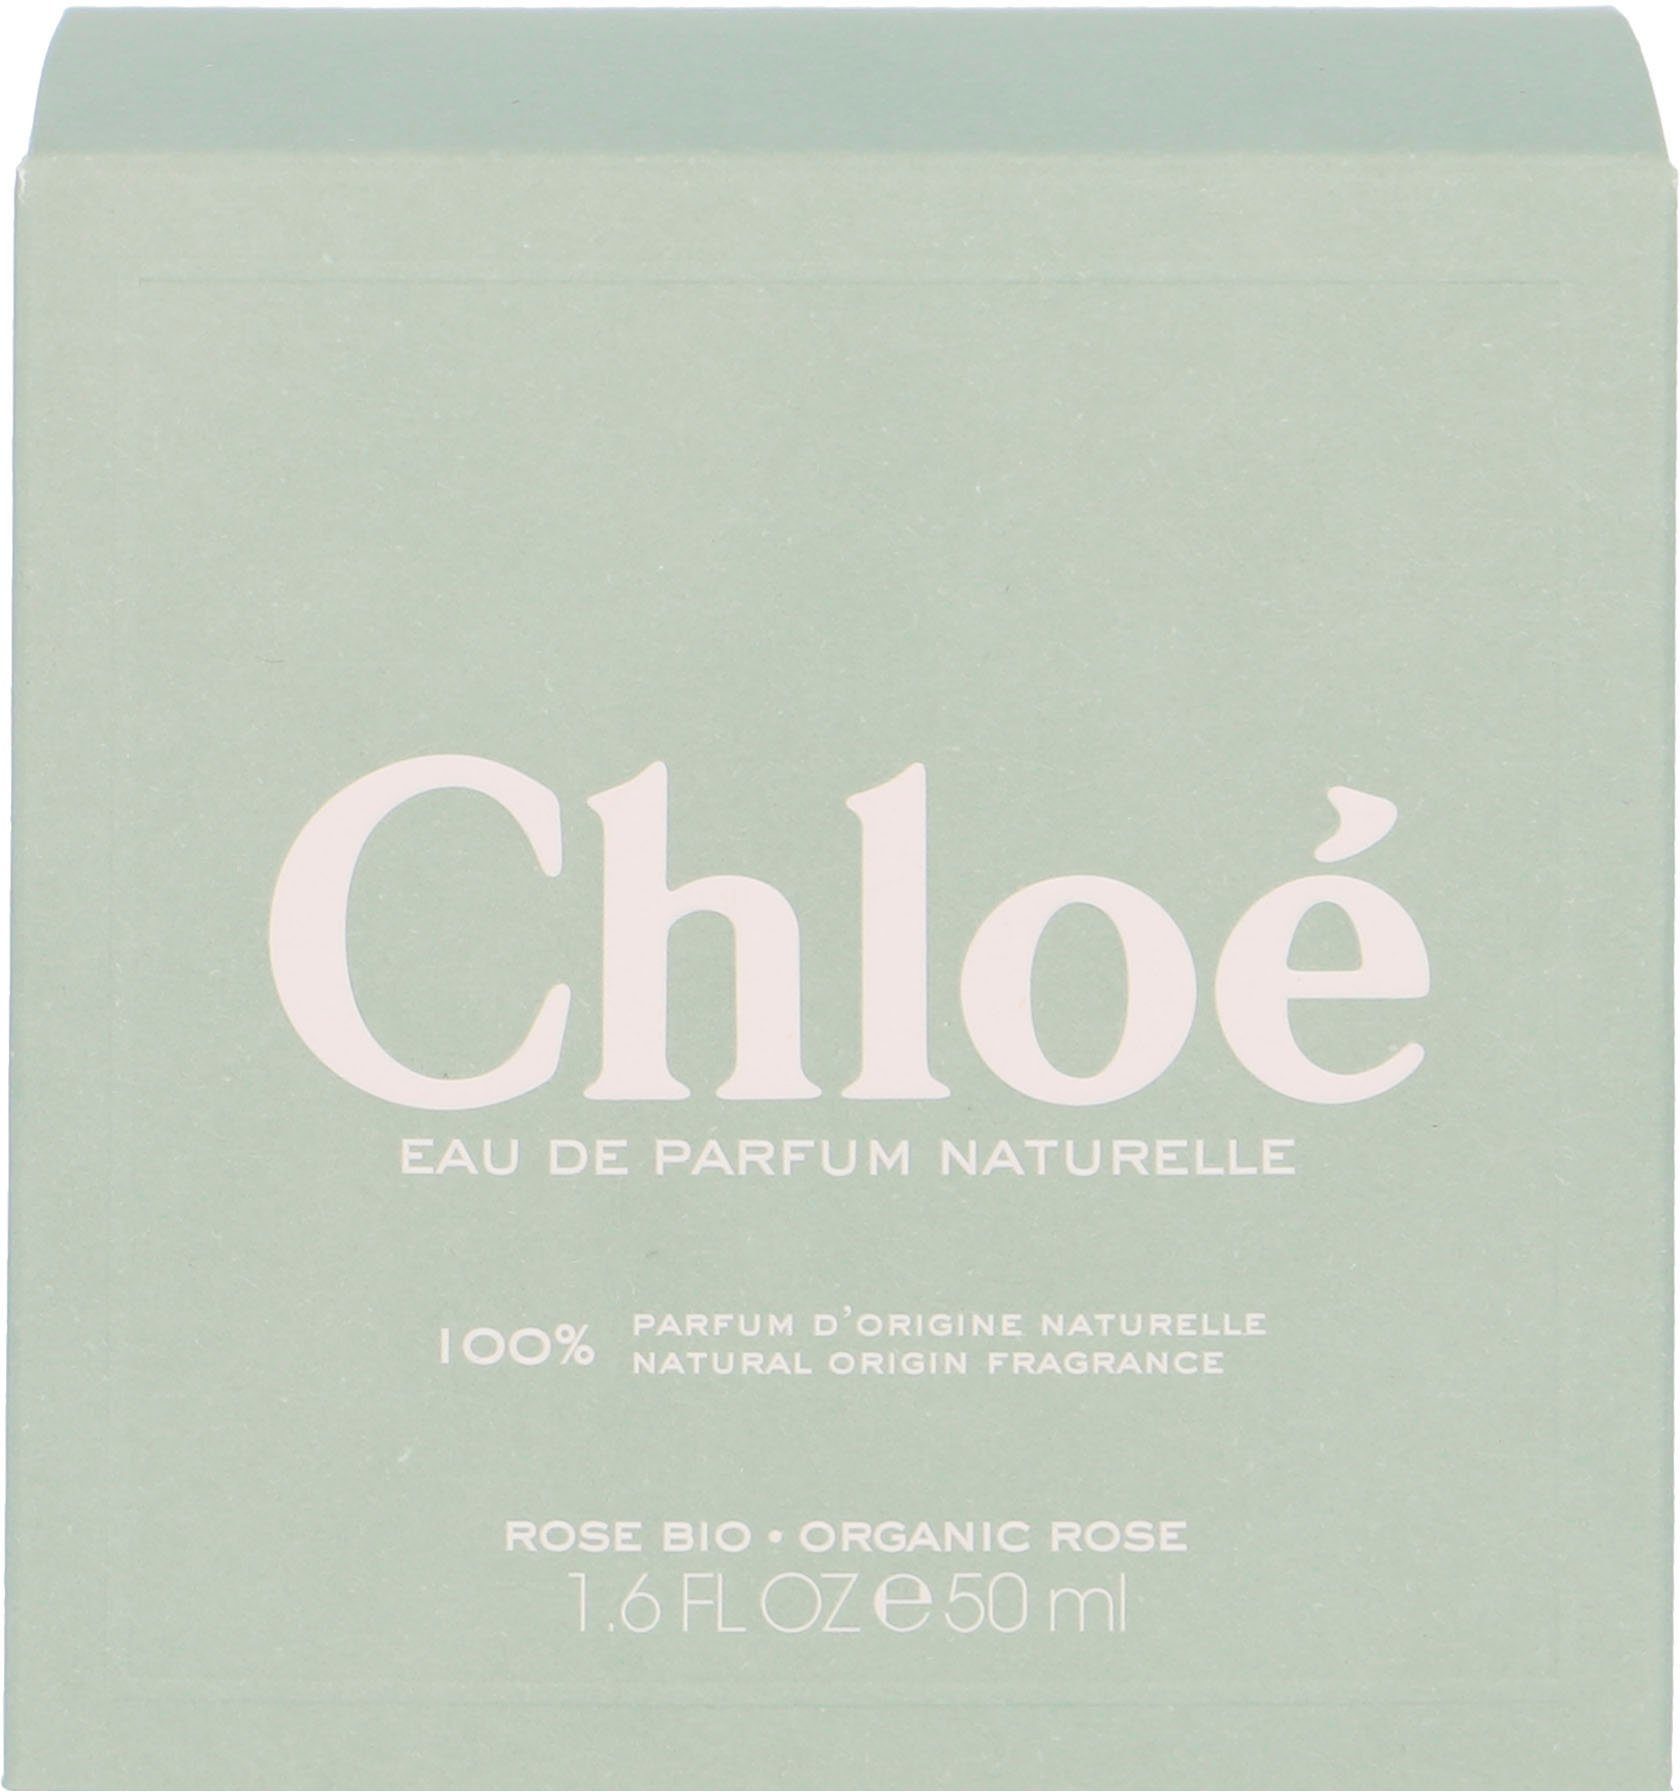 Chloé Eau de Signature Naturelle Parfum